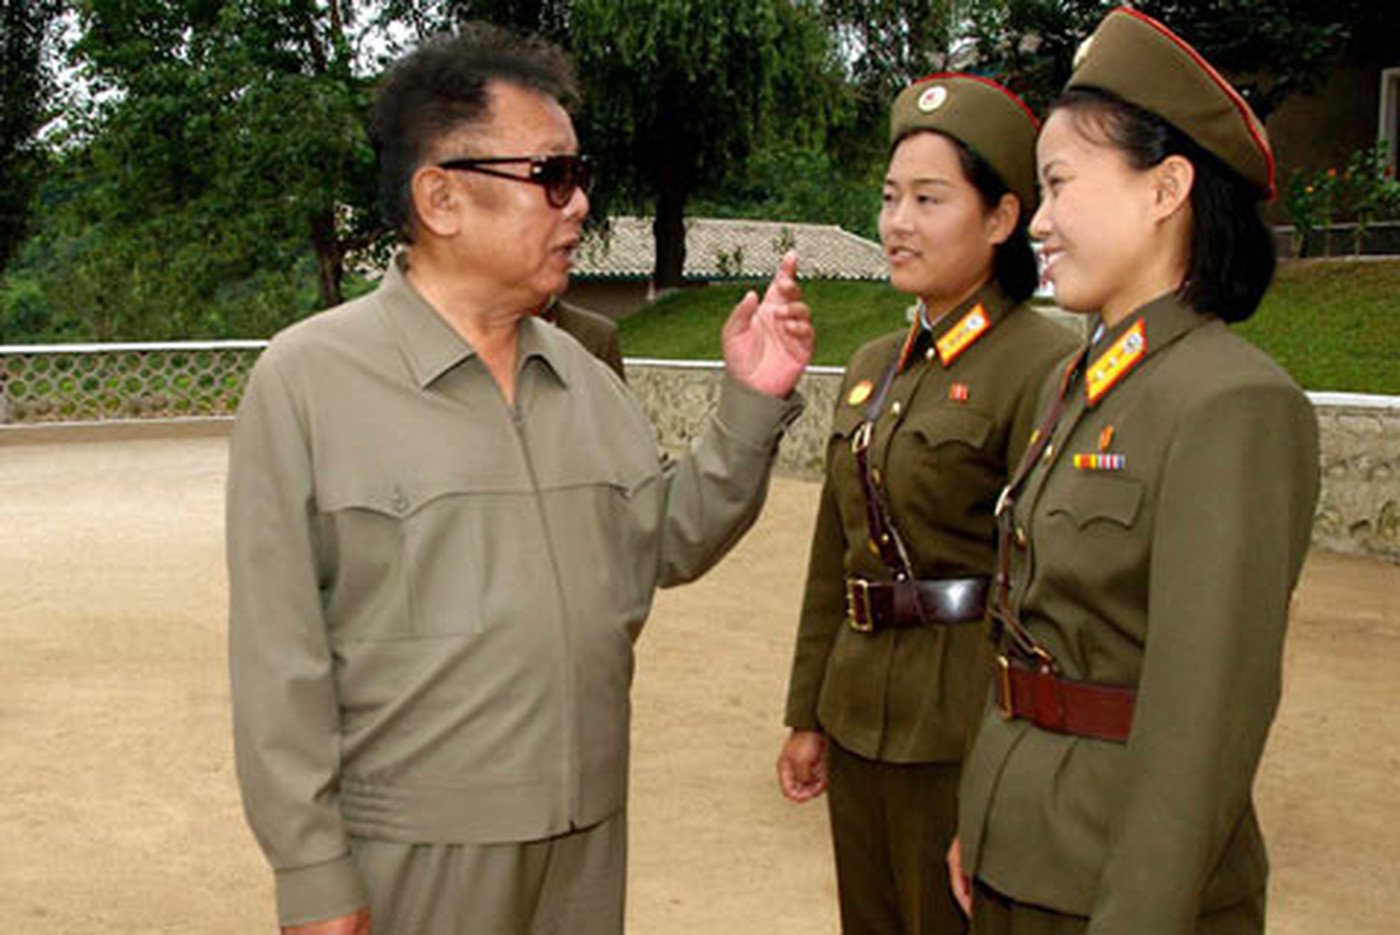 Исторические уроки Ким Чен Ира: сегодня корейскому лидеру исполнилось бы 77 лет / Его называют идеологом национальной самостоятельности, политиком, который стремился возродить «сильную Корею». Человеком довольно замкнутым в официальной обстановке, но   открытым и душевным в обычной жизни. Начиная с 70-х  прошлого века,  ему  было посвящено  более 73 тысяч книг. 16 февраля Ким Чен Иру, возглавлявшему КНДР  в течение 17 лет, исполнилось бы 77 лет.